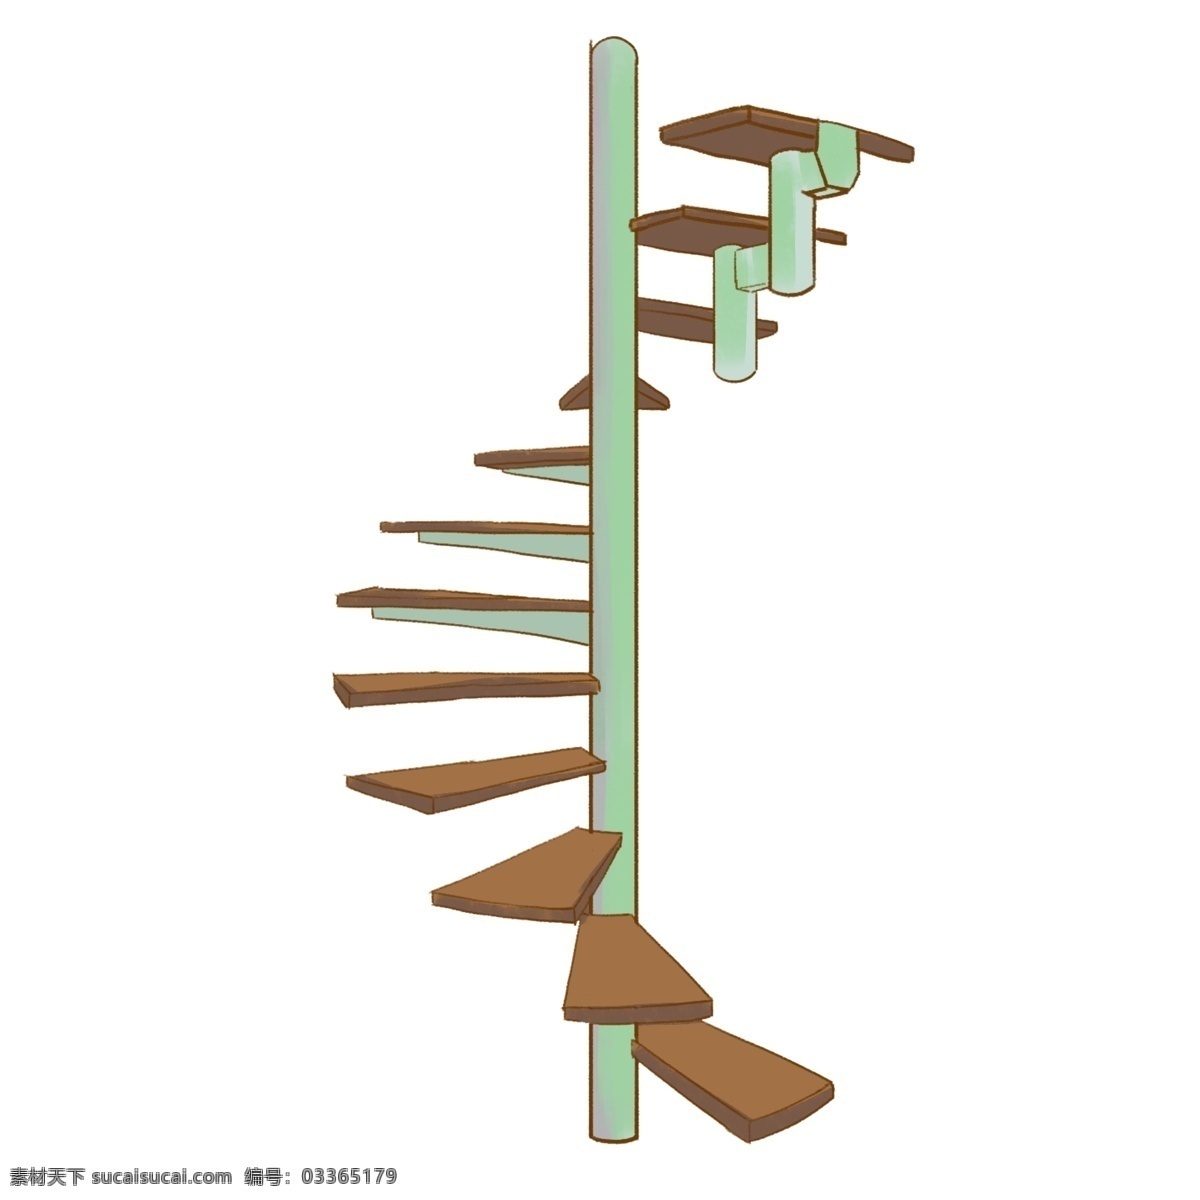 绿色 柱子 楼梯 插图 旋转的楼梯 绿色柱子 长长的柱子 棕色楼梯 向上的楼梯 高高的楼梯 建筑楼梯